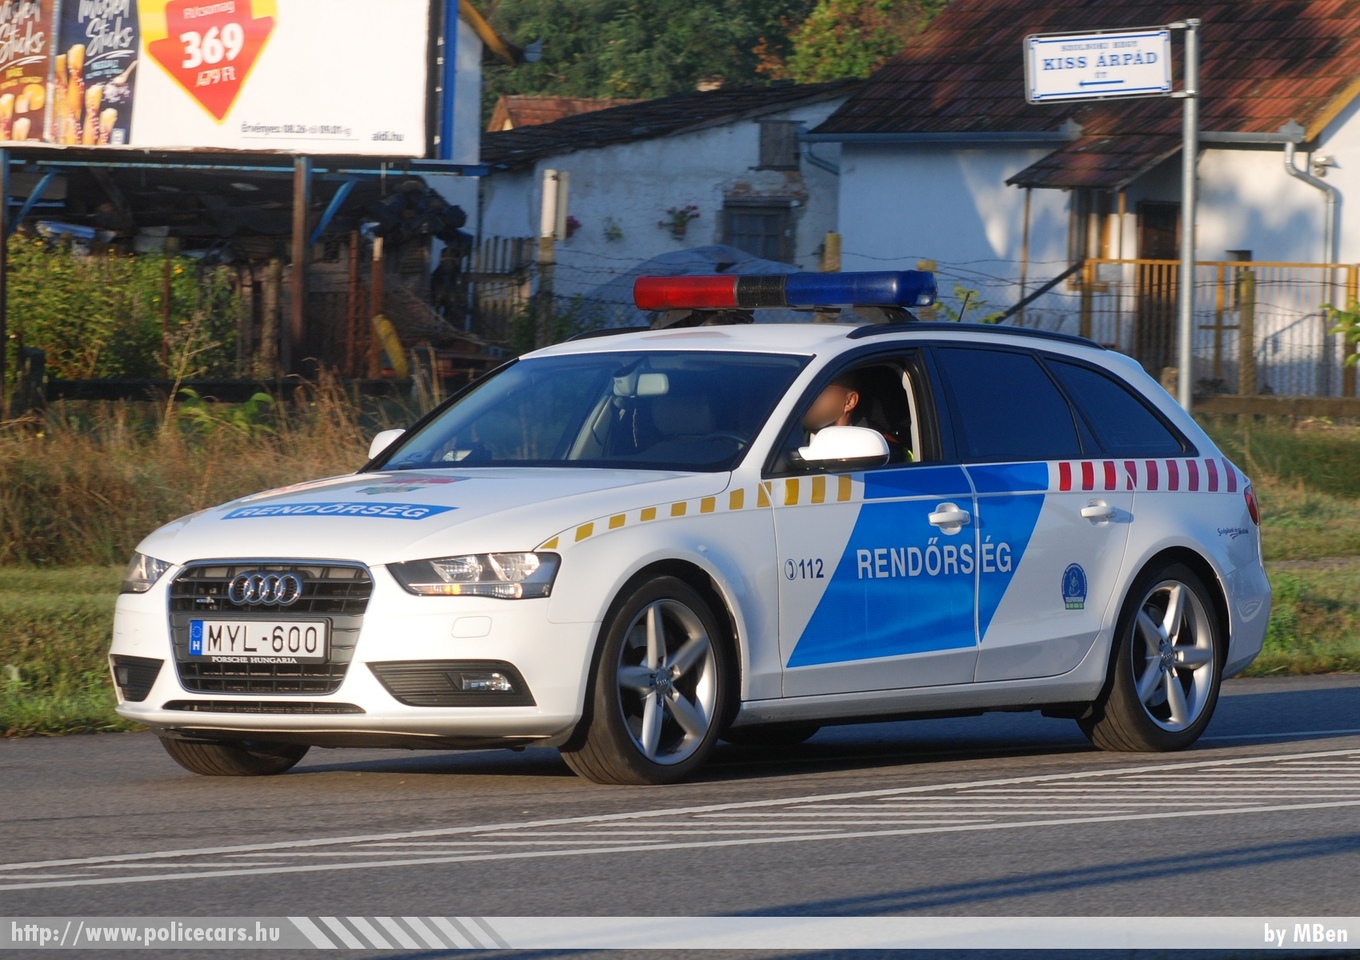 Audi A4 Avant 3.0 TFSI quattro, fotó: MBen
Keywords: rendőr rendőrautó rendőrség magyar Magyarország police policecar Hungary hungarian MYL-600